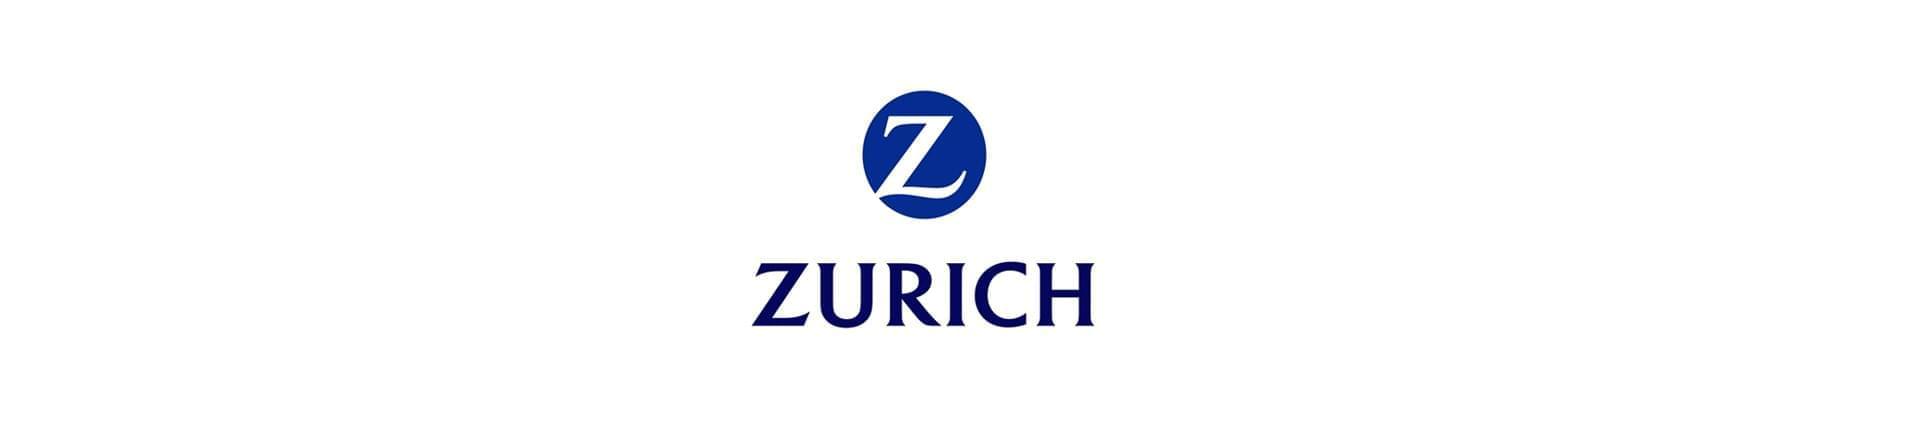 Zurich Logo - Jobs & Careers at Zurich Insurance